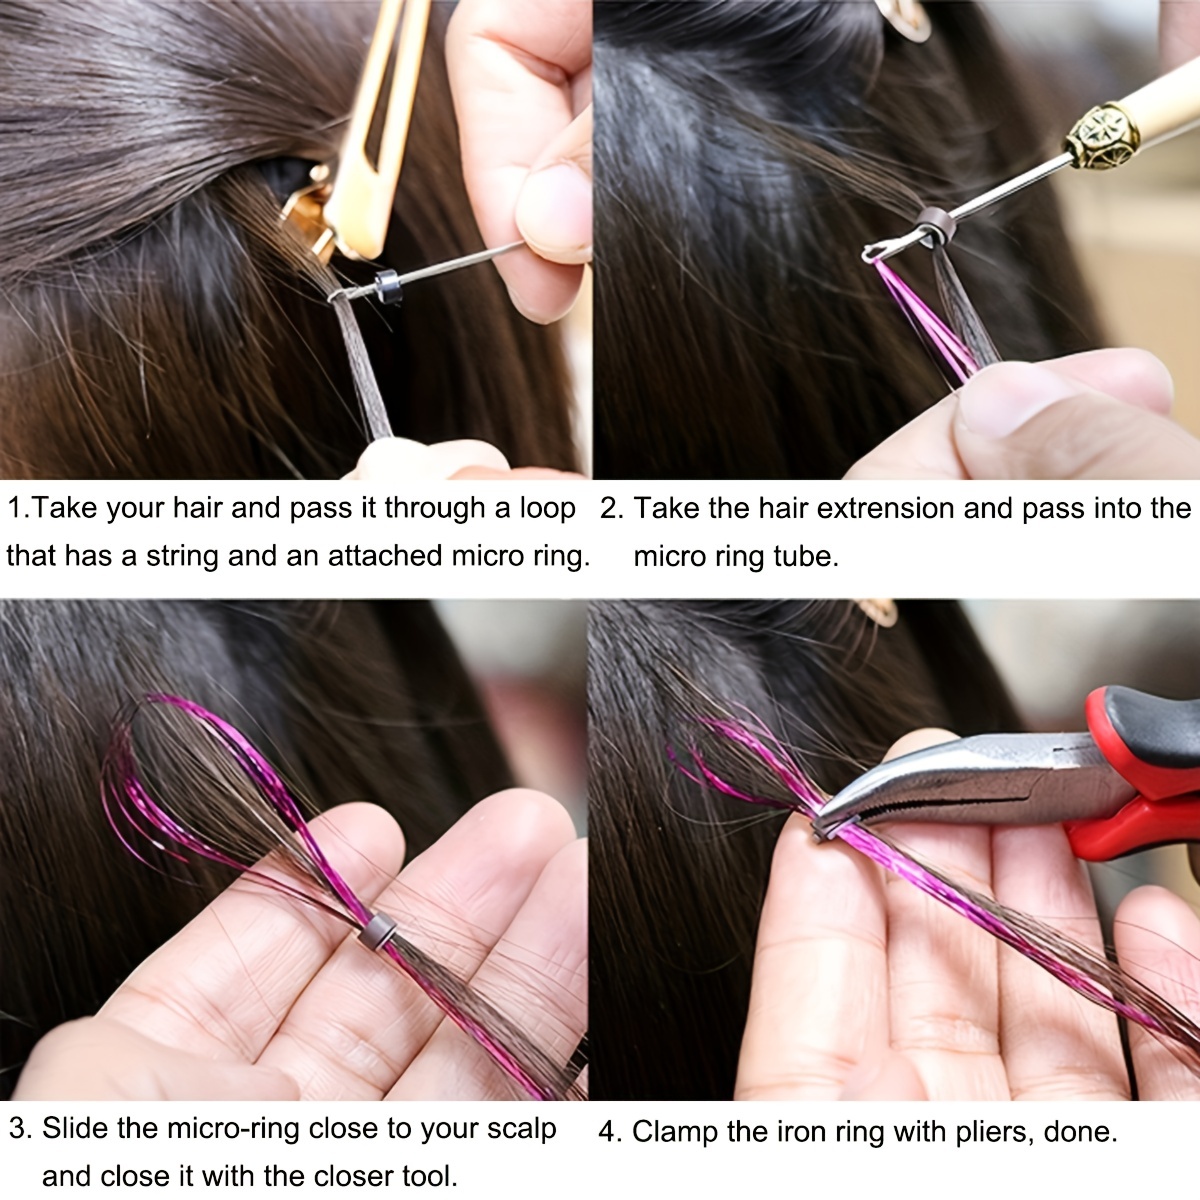 Hair Extension Tools Kit – 1 Plier - 2 Hook Needle Pulling Loop